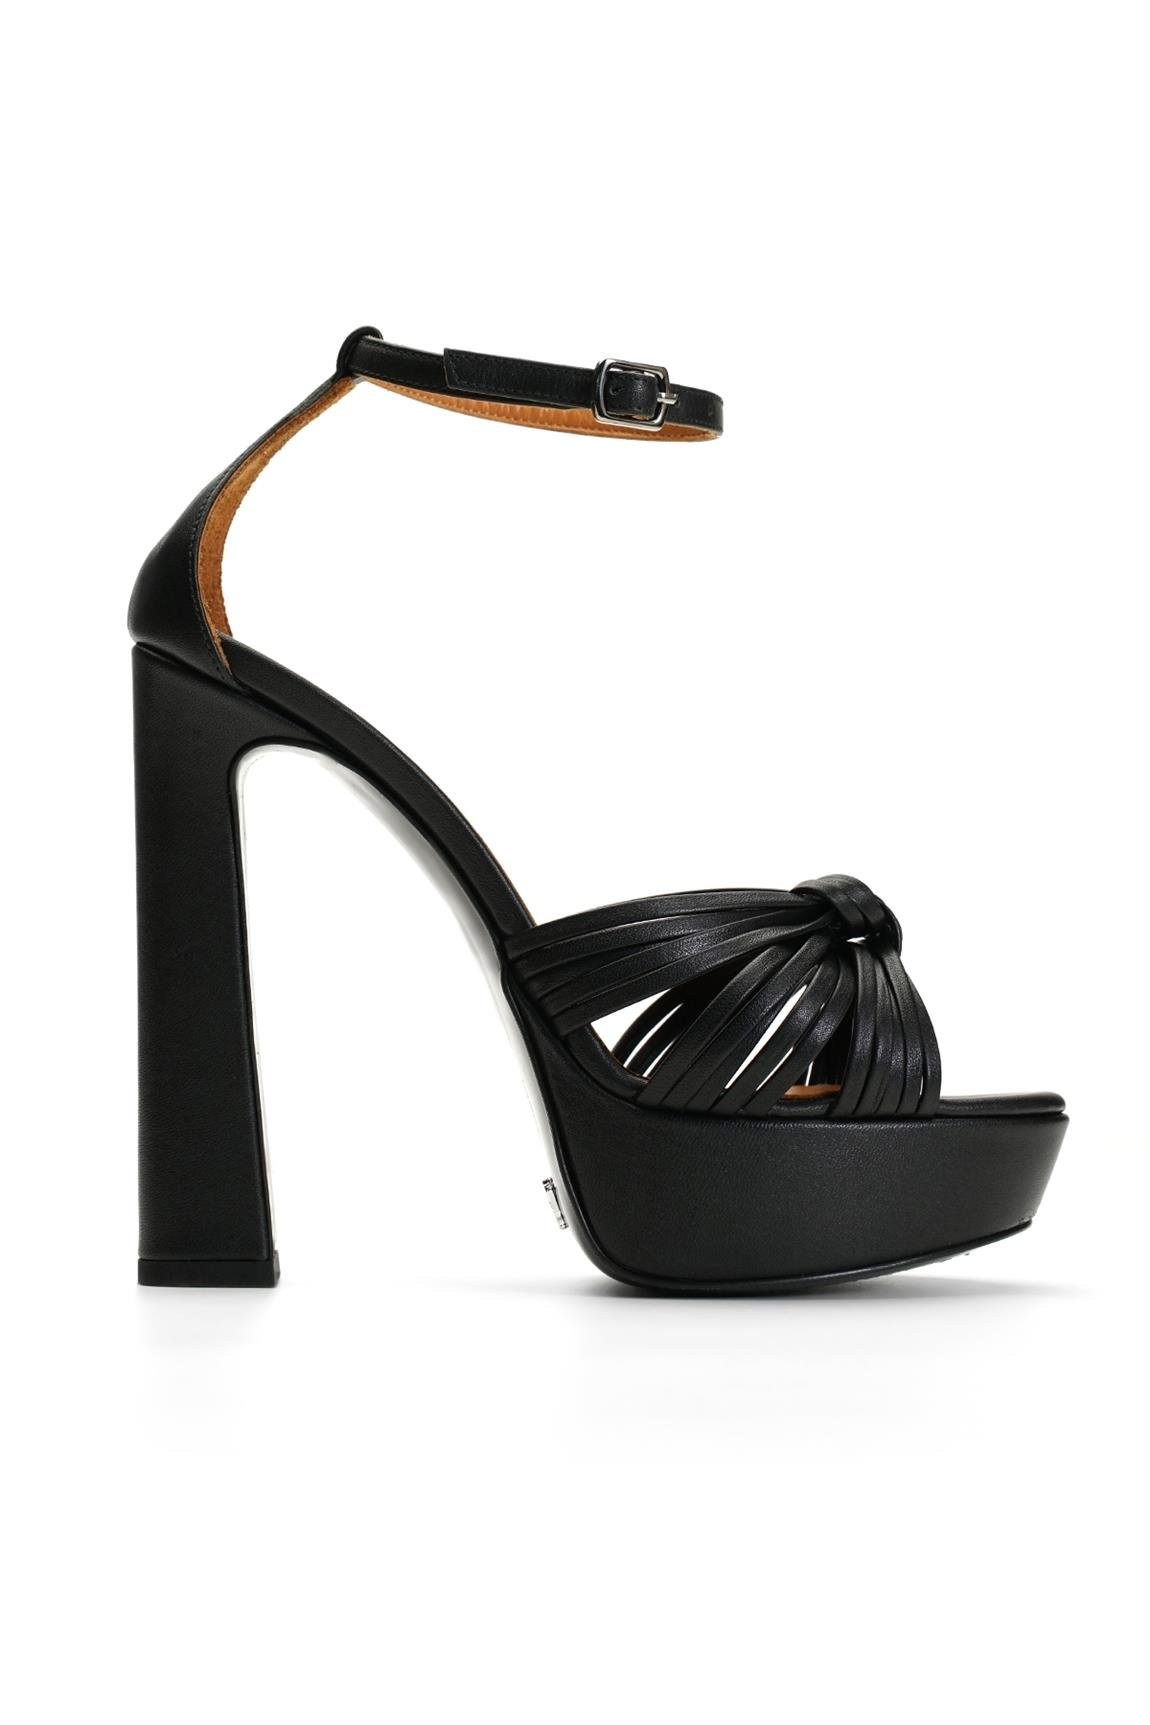 Jabotter Gwen Black Leather Platform Heeled Shoes